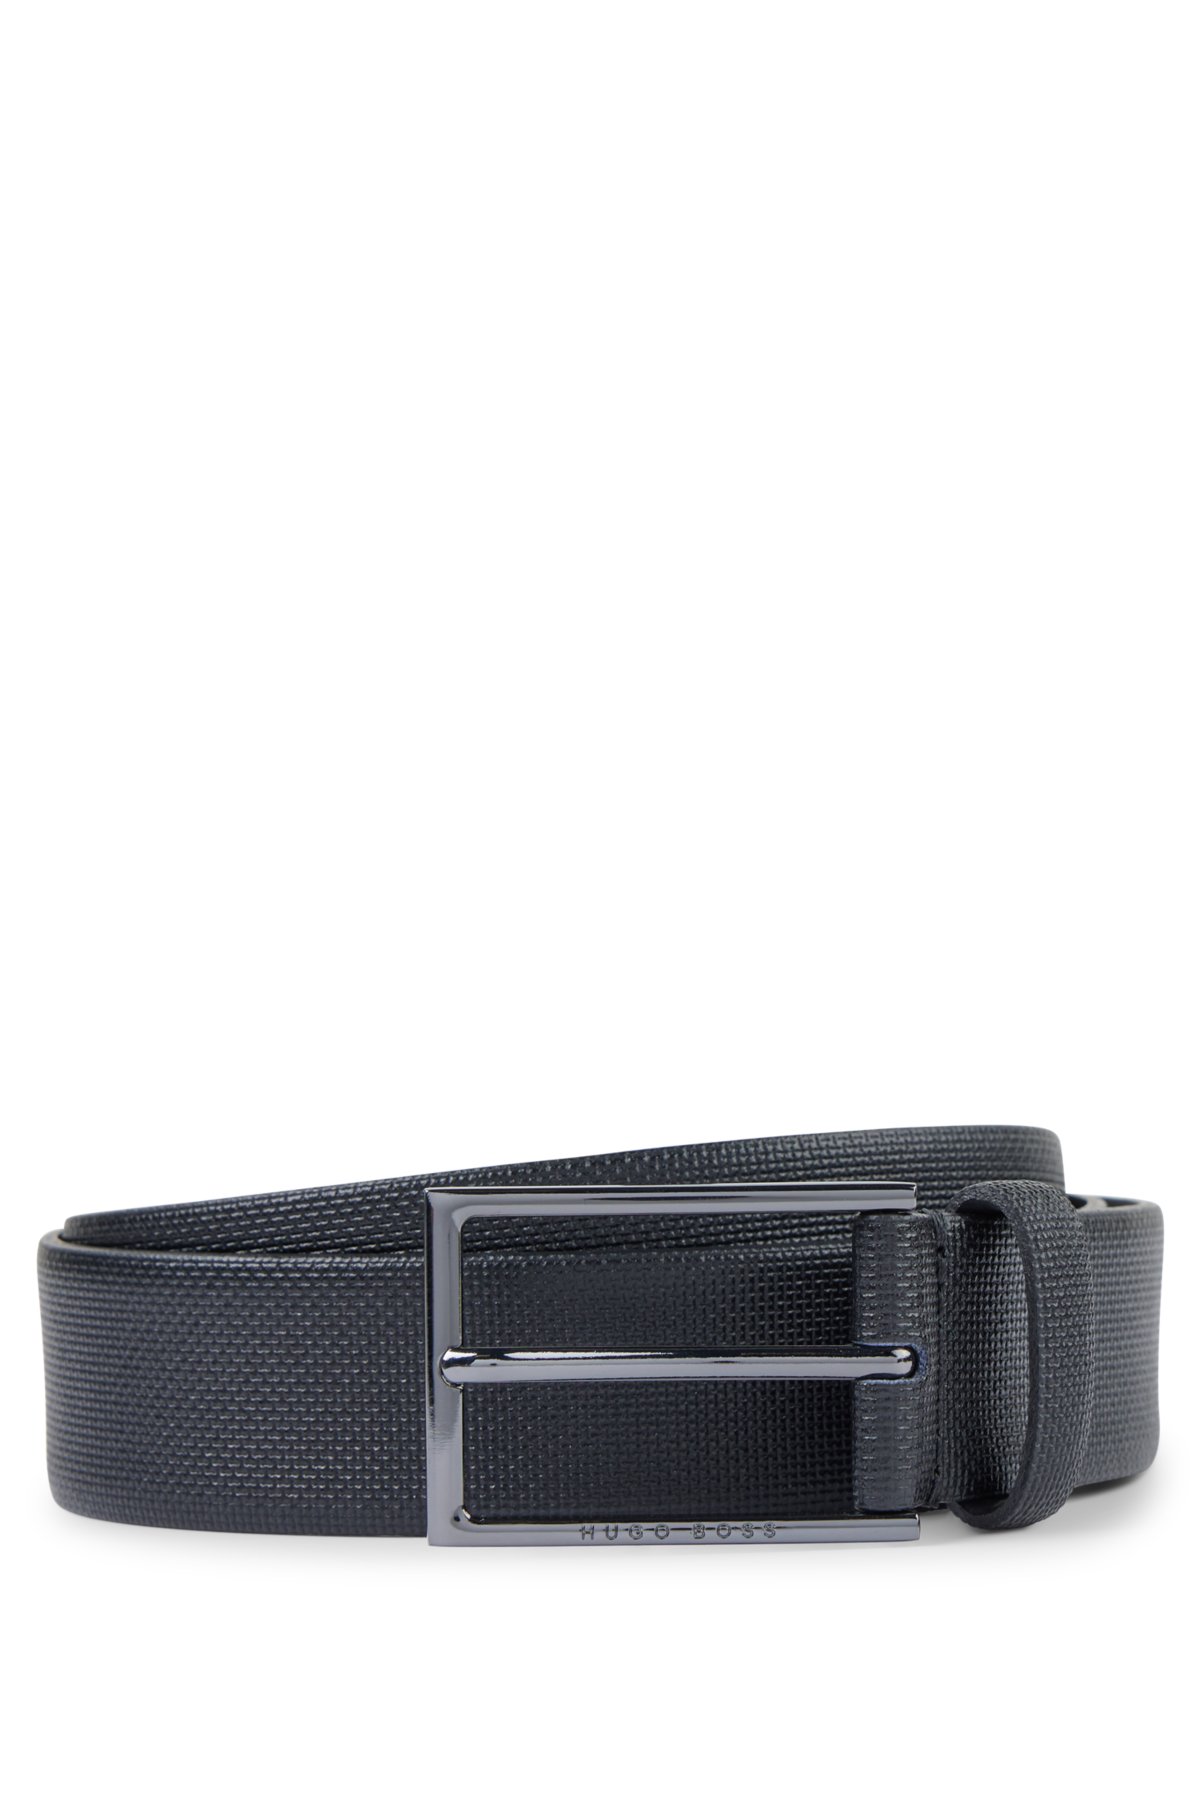 Italian leather Western belt, HUGO, Dressy Belts for Men